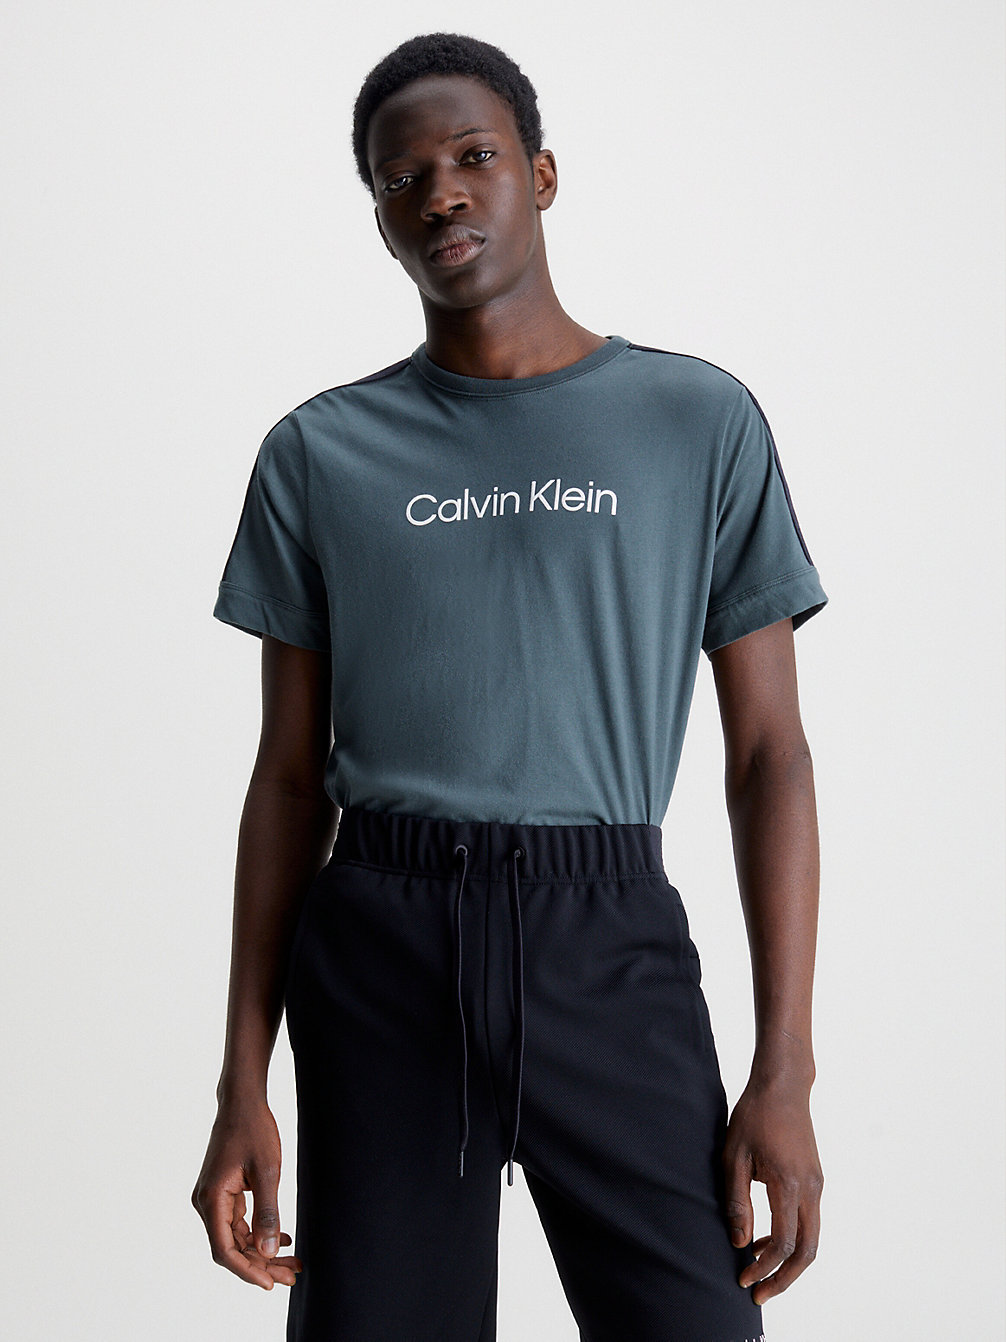 URBAN CHIC Weiches Gym-T-Shirt undefined Herren Calvin Klein